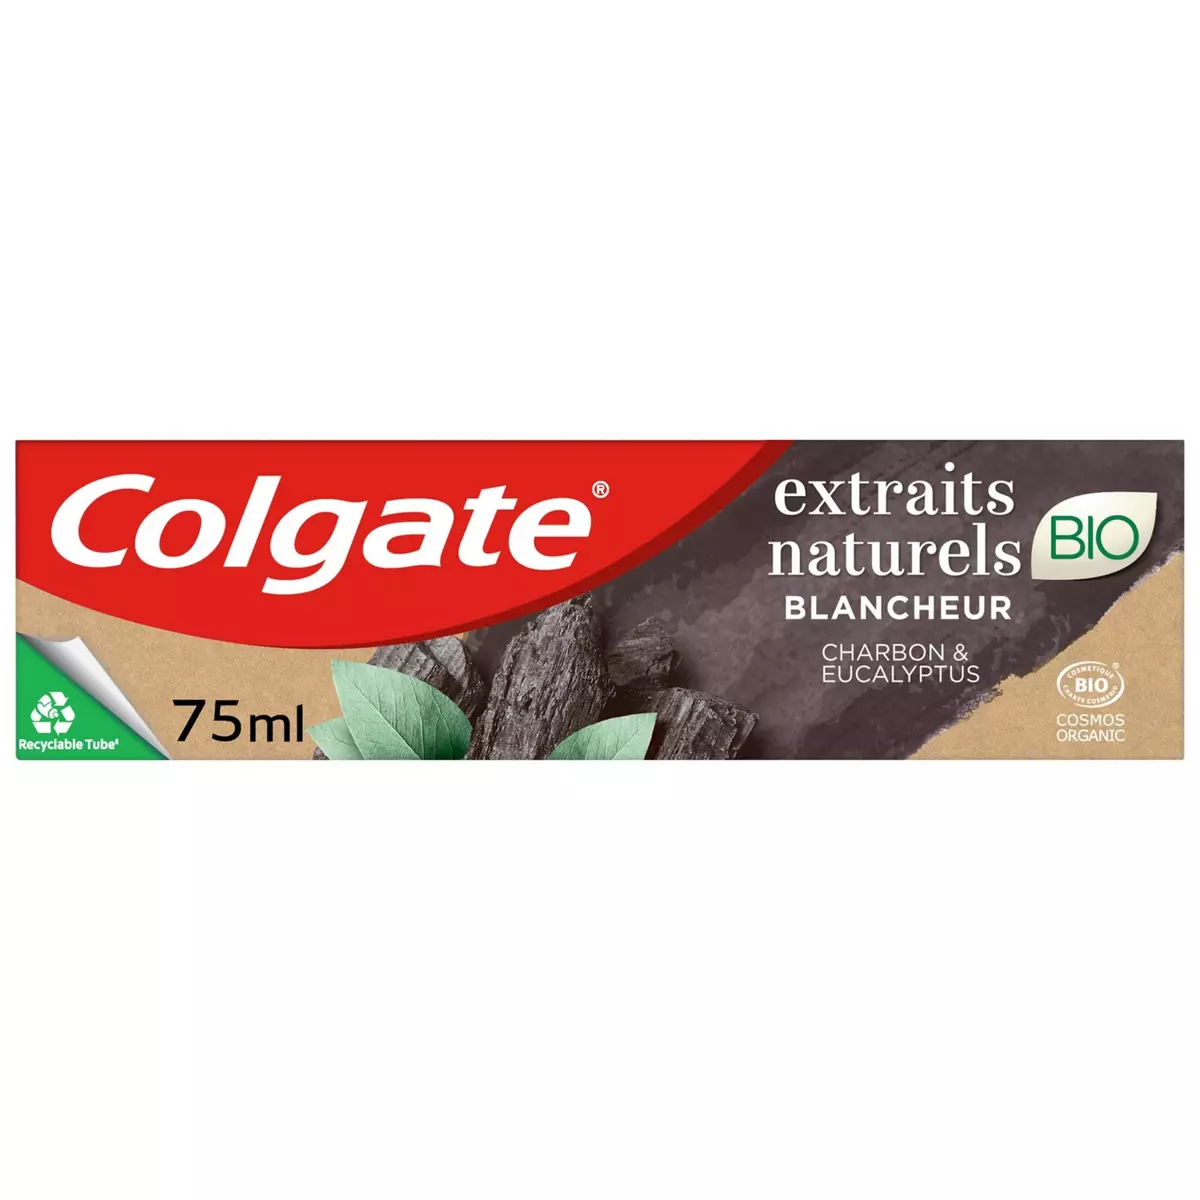 COLGATE Dentifrice blancheur bio aux extraits naturels de charbon et eucalyptus 75ml